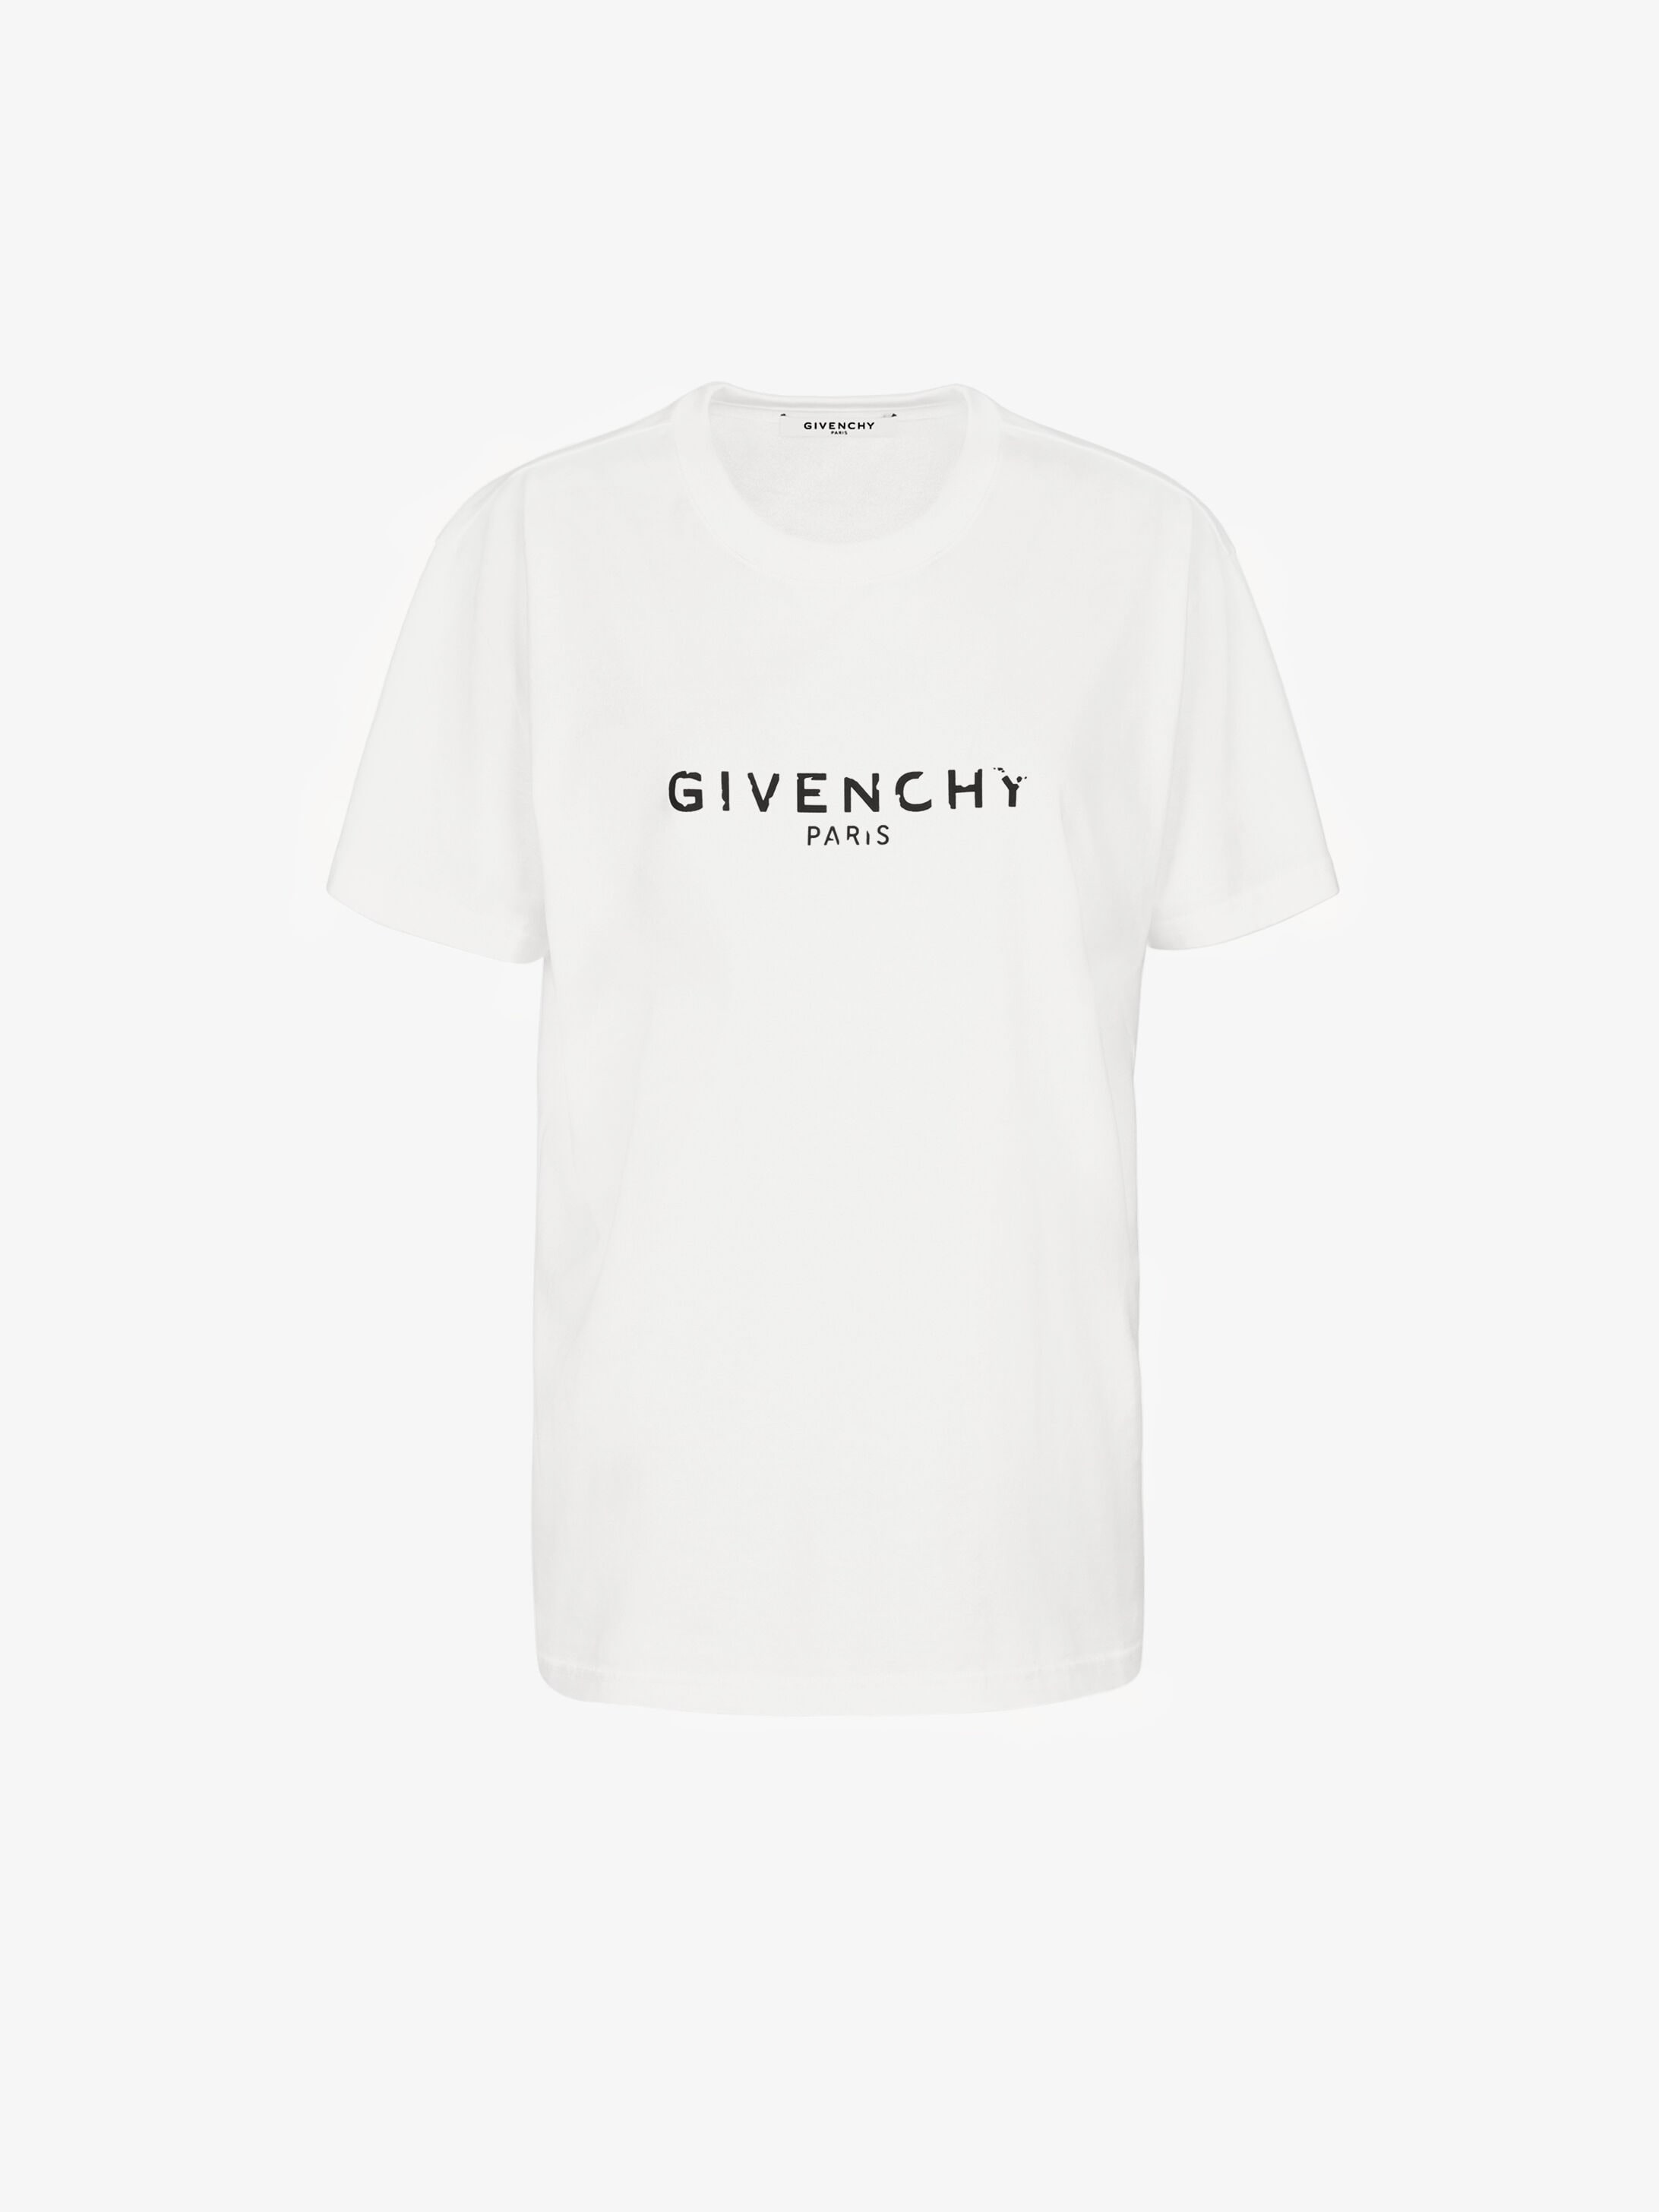 grey givenchy t shirt